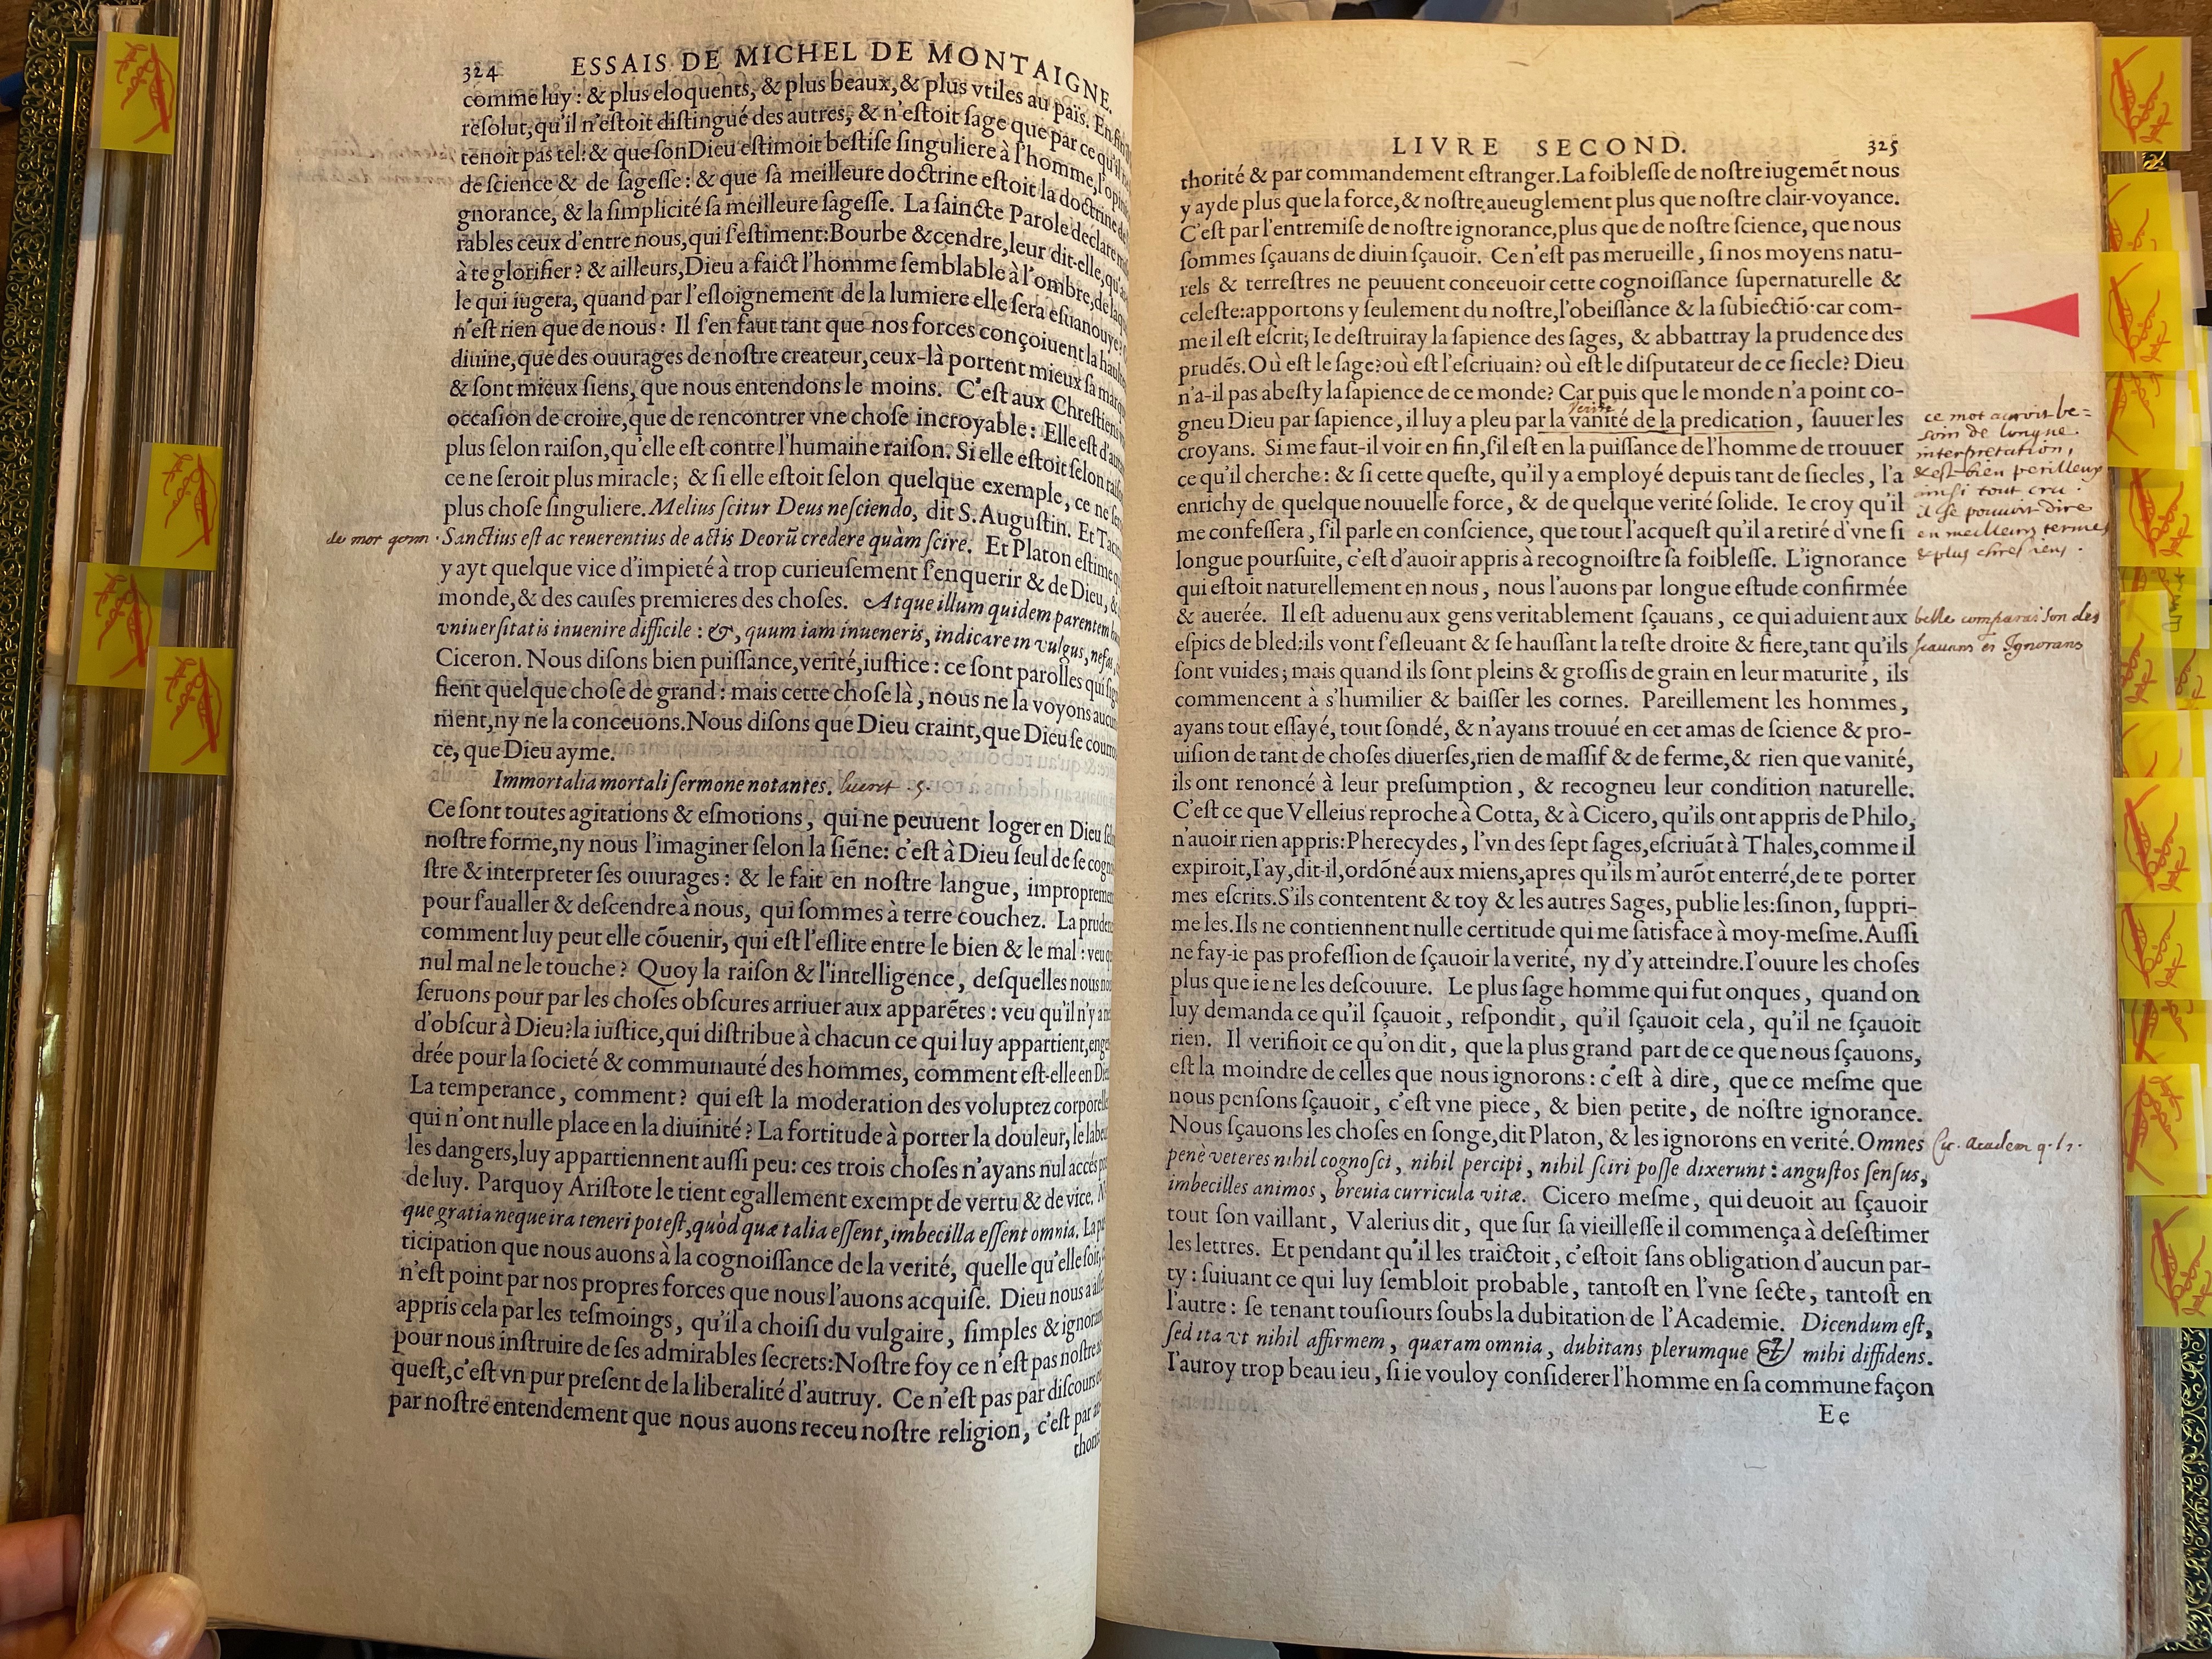 10. - p. 324-325, Livre II. Les Essais, 1595. Exemplaire Laval.